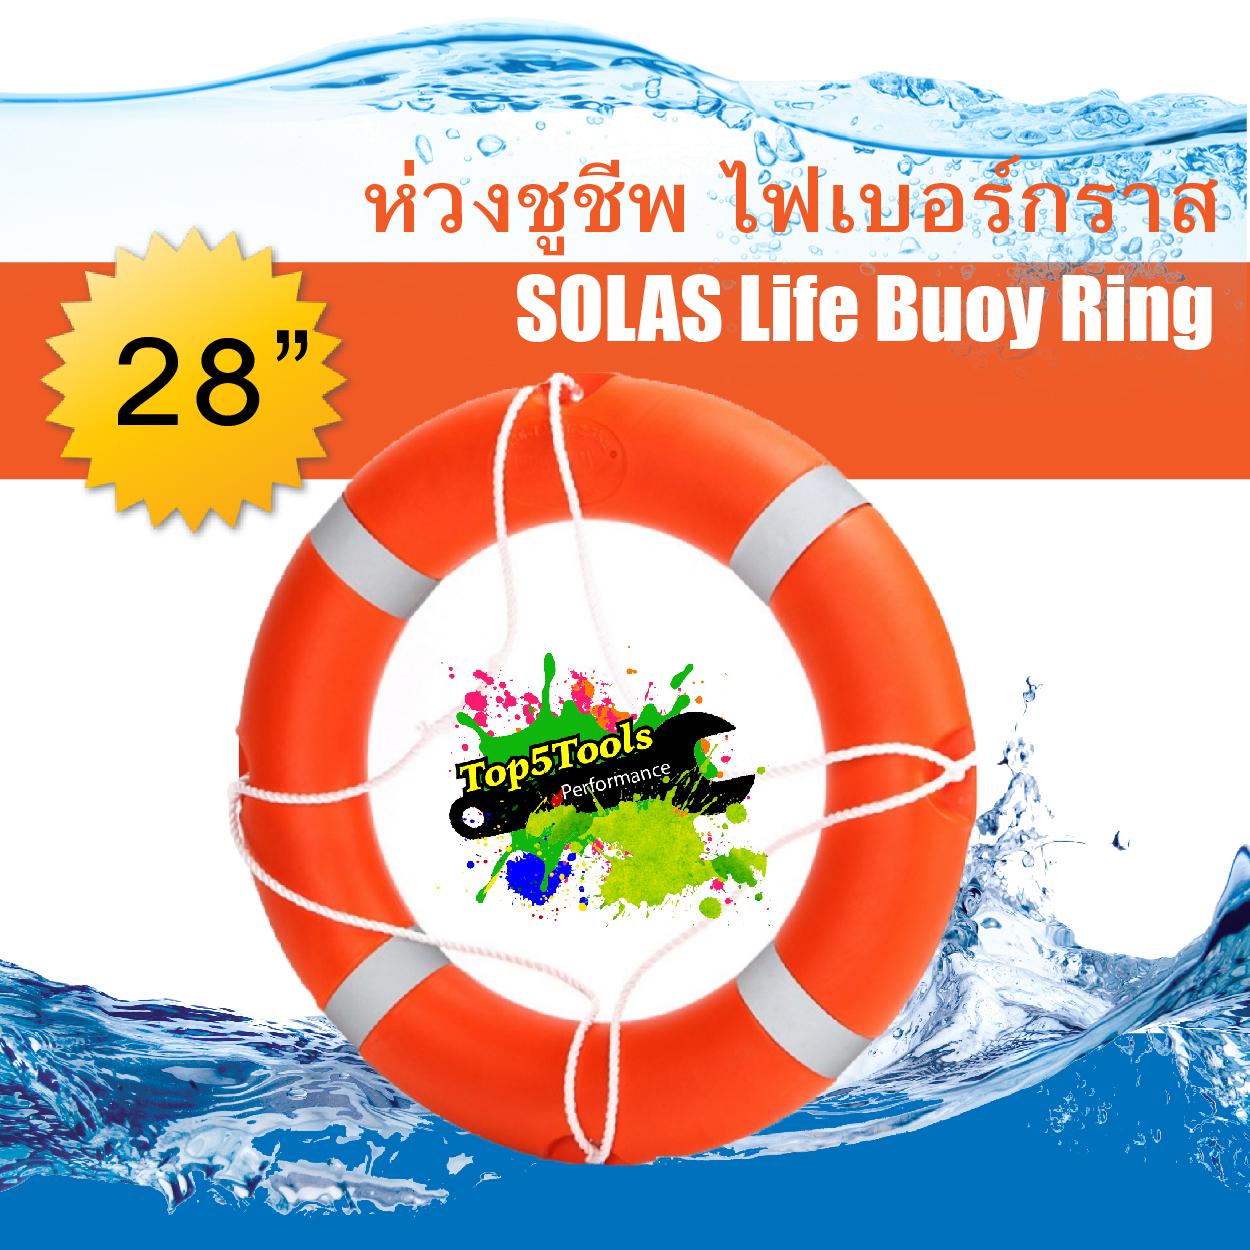 ห่วงชูชีพ ไฟเบอร์กราส ตามมาตรฐาน SOLAS Life Buoy Ring